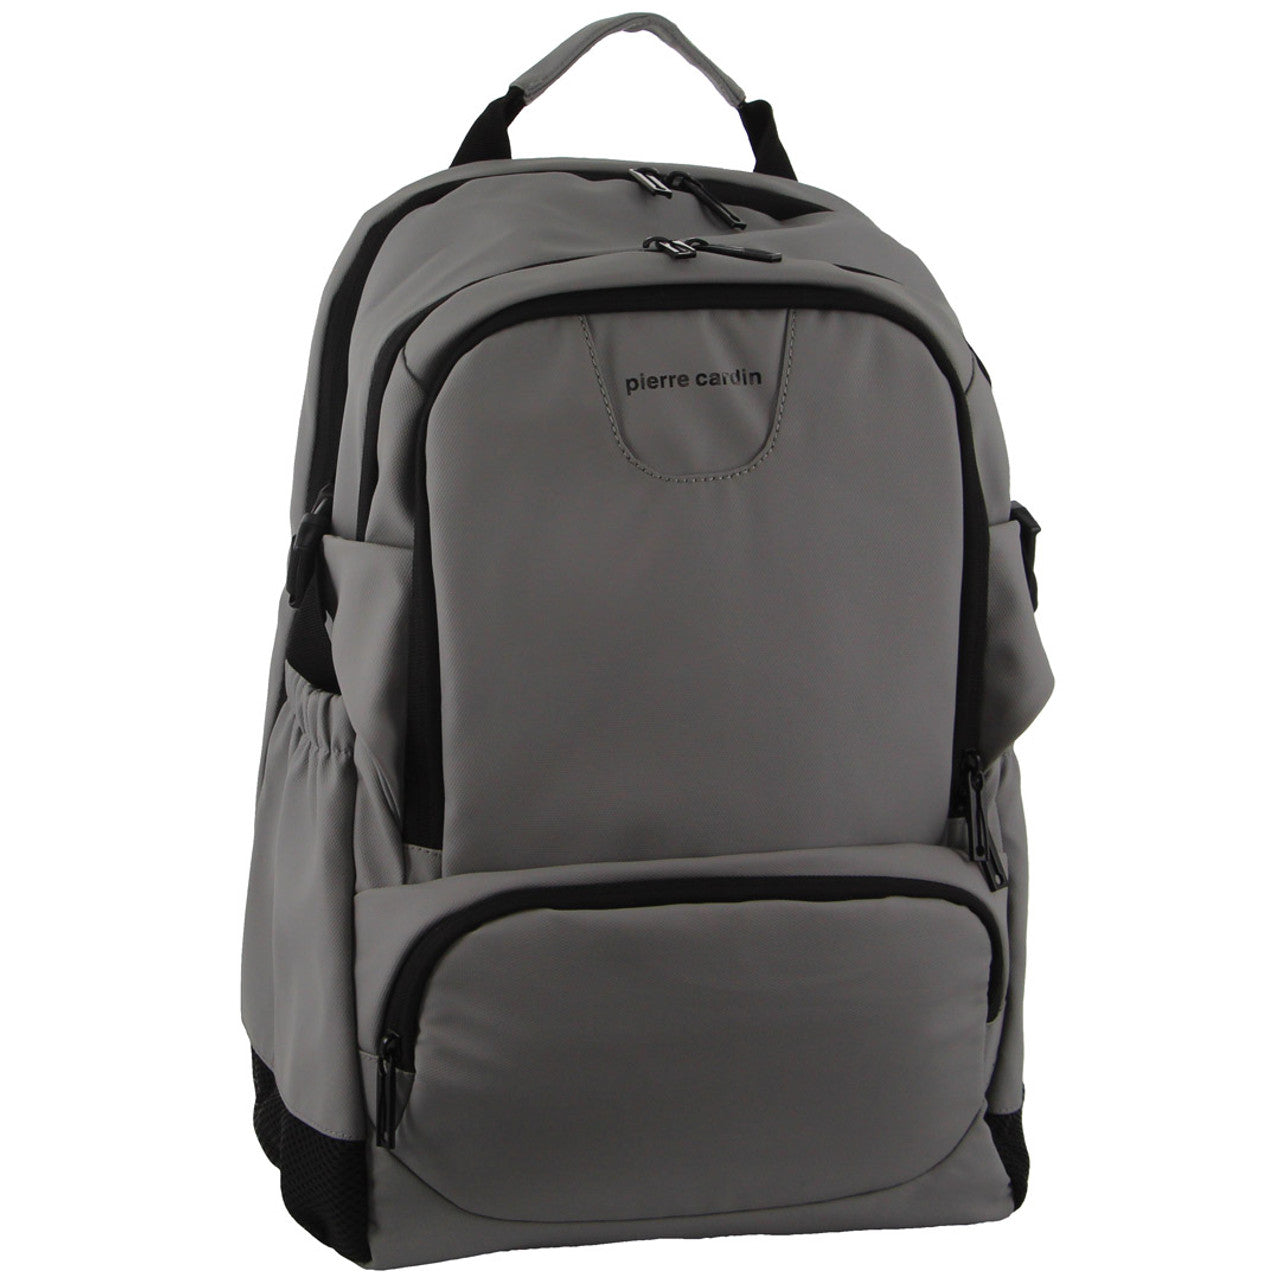 Pierre Cardin - PC3622 15in Laptop backpack w USB port - Grey